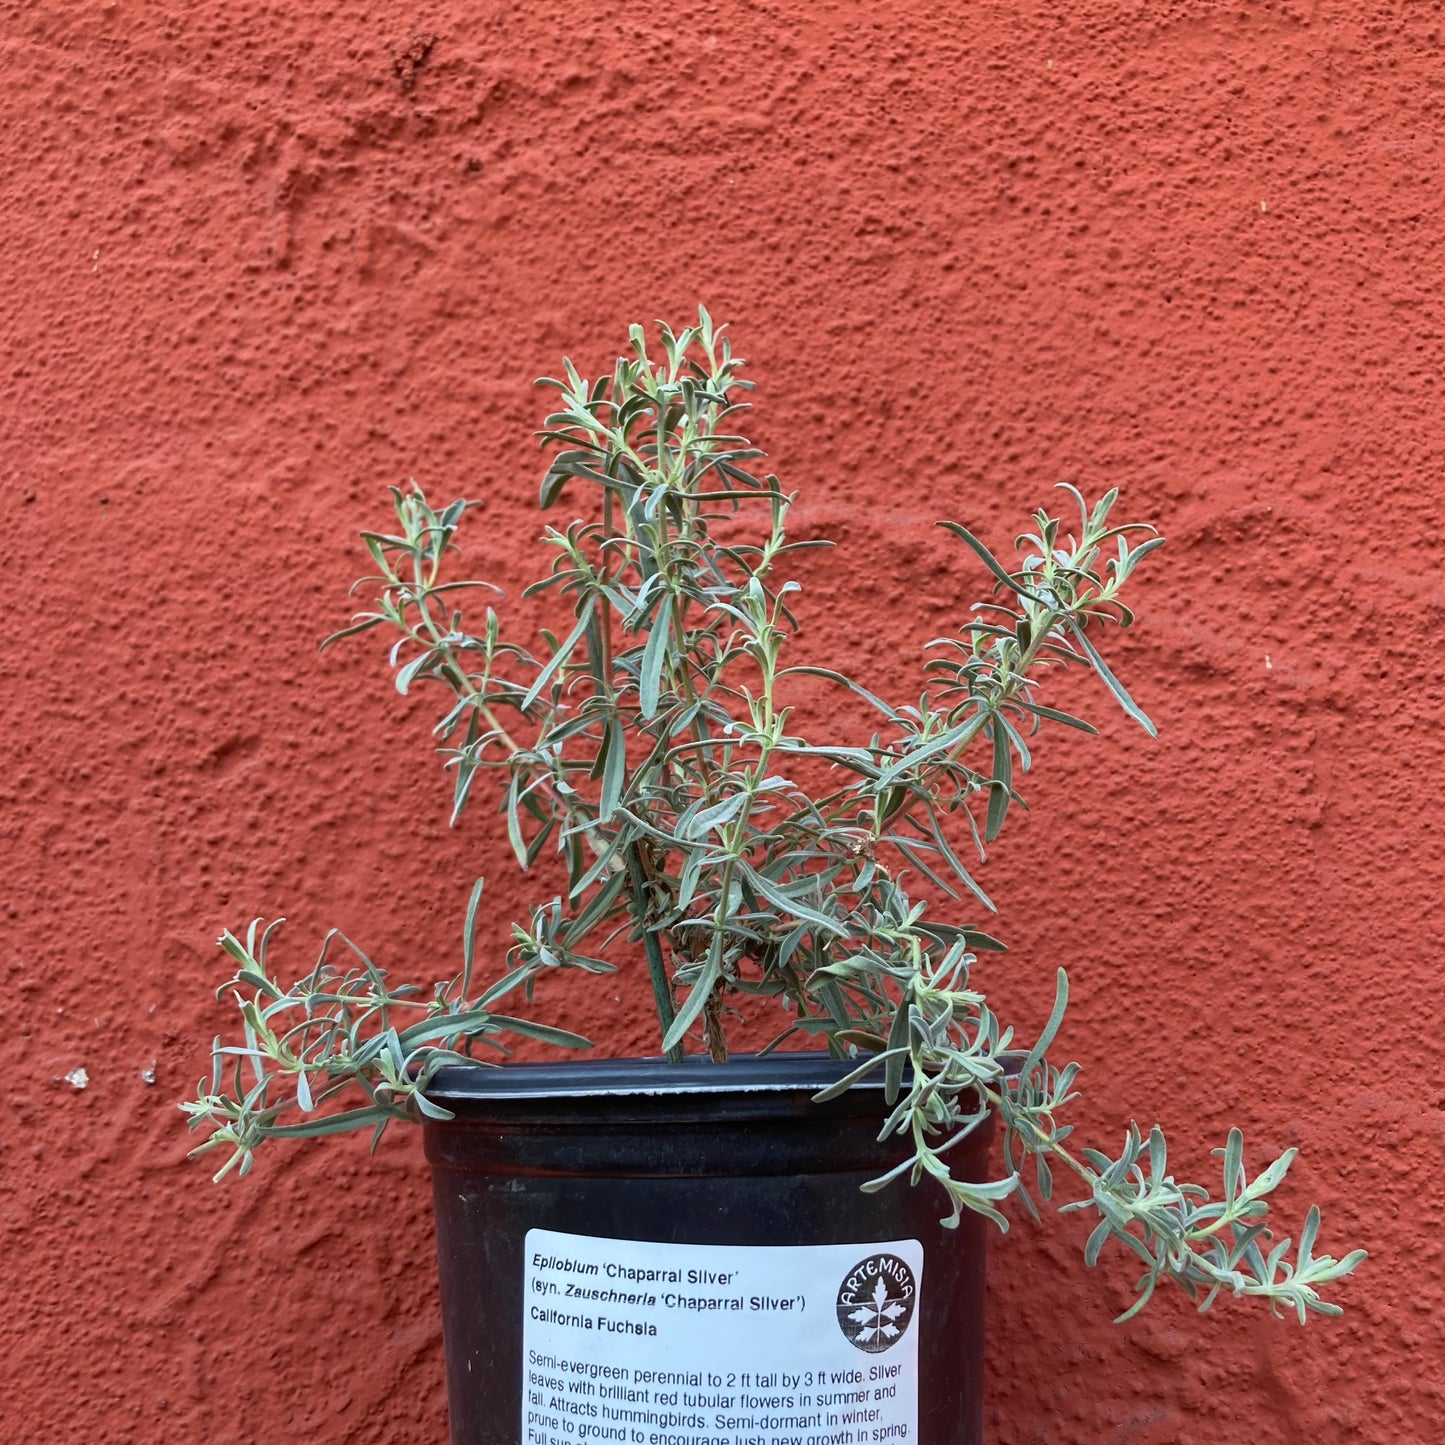 Epilobium canum 'Chaparral Silver' - California Fuchsia